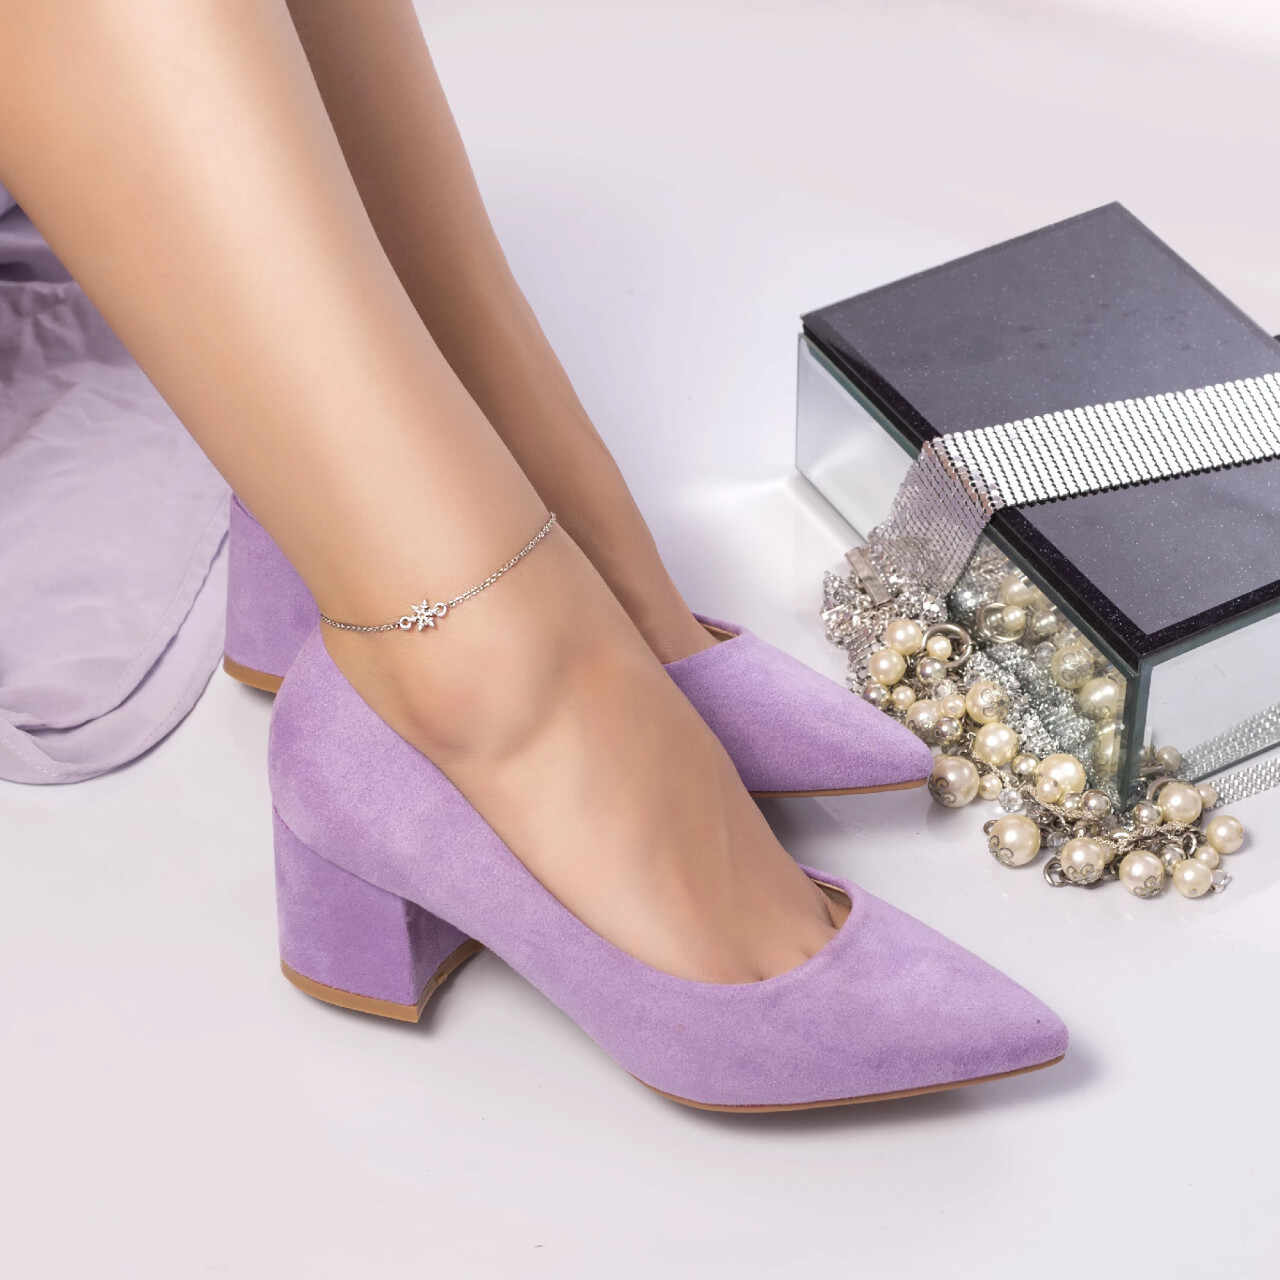 Pantof damai cu toc saima catifea violet